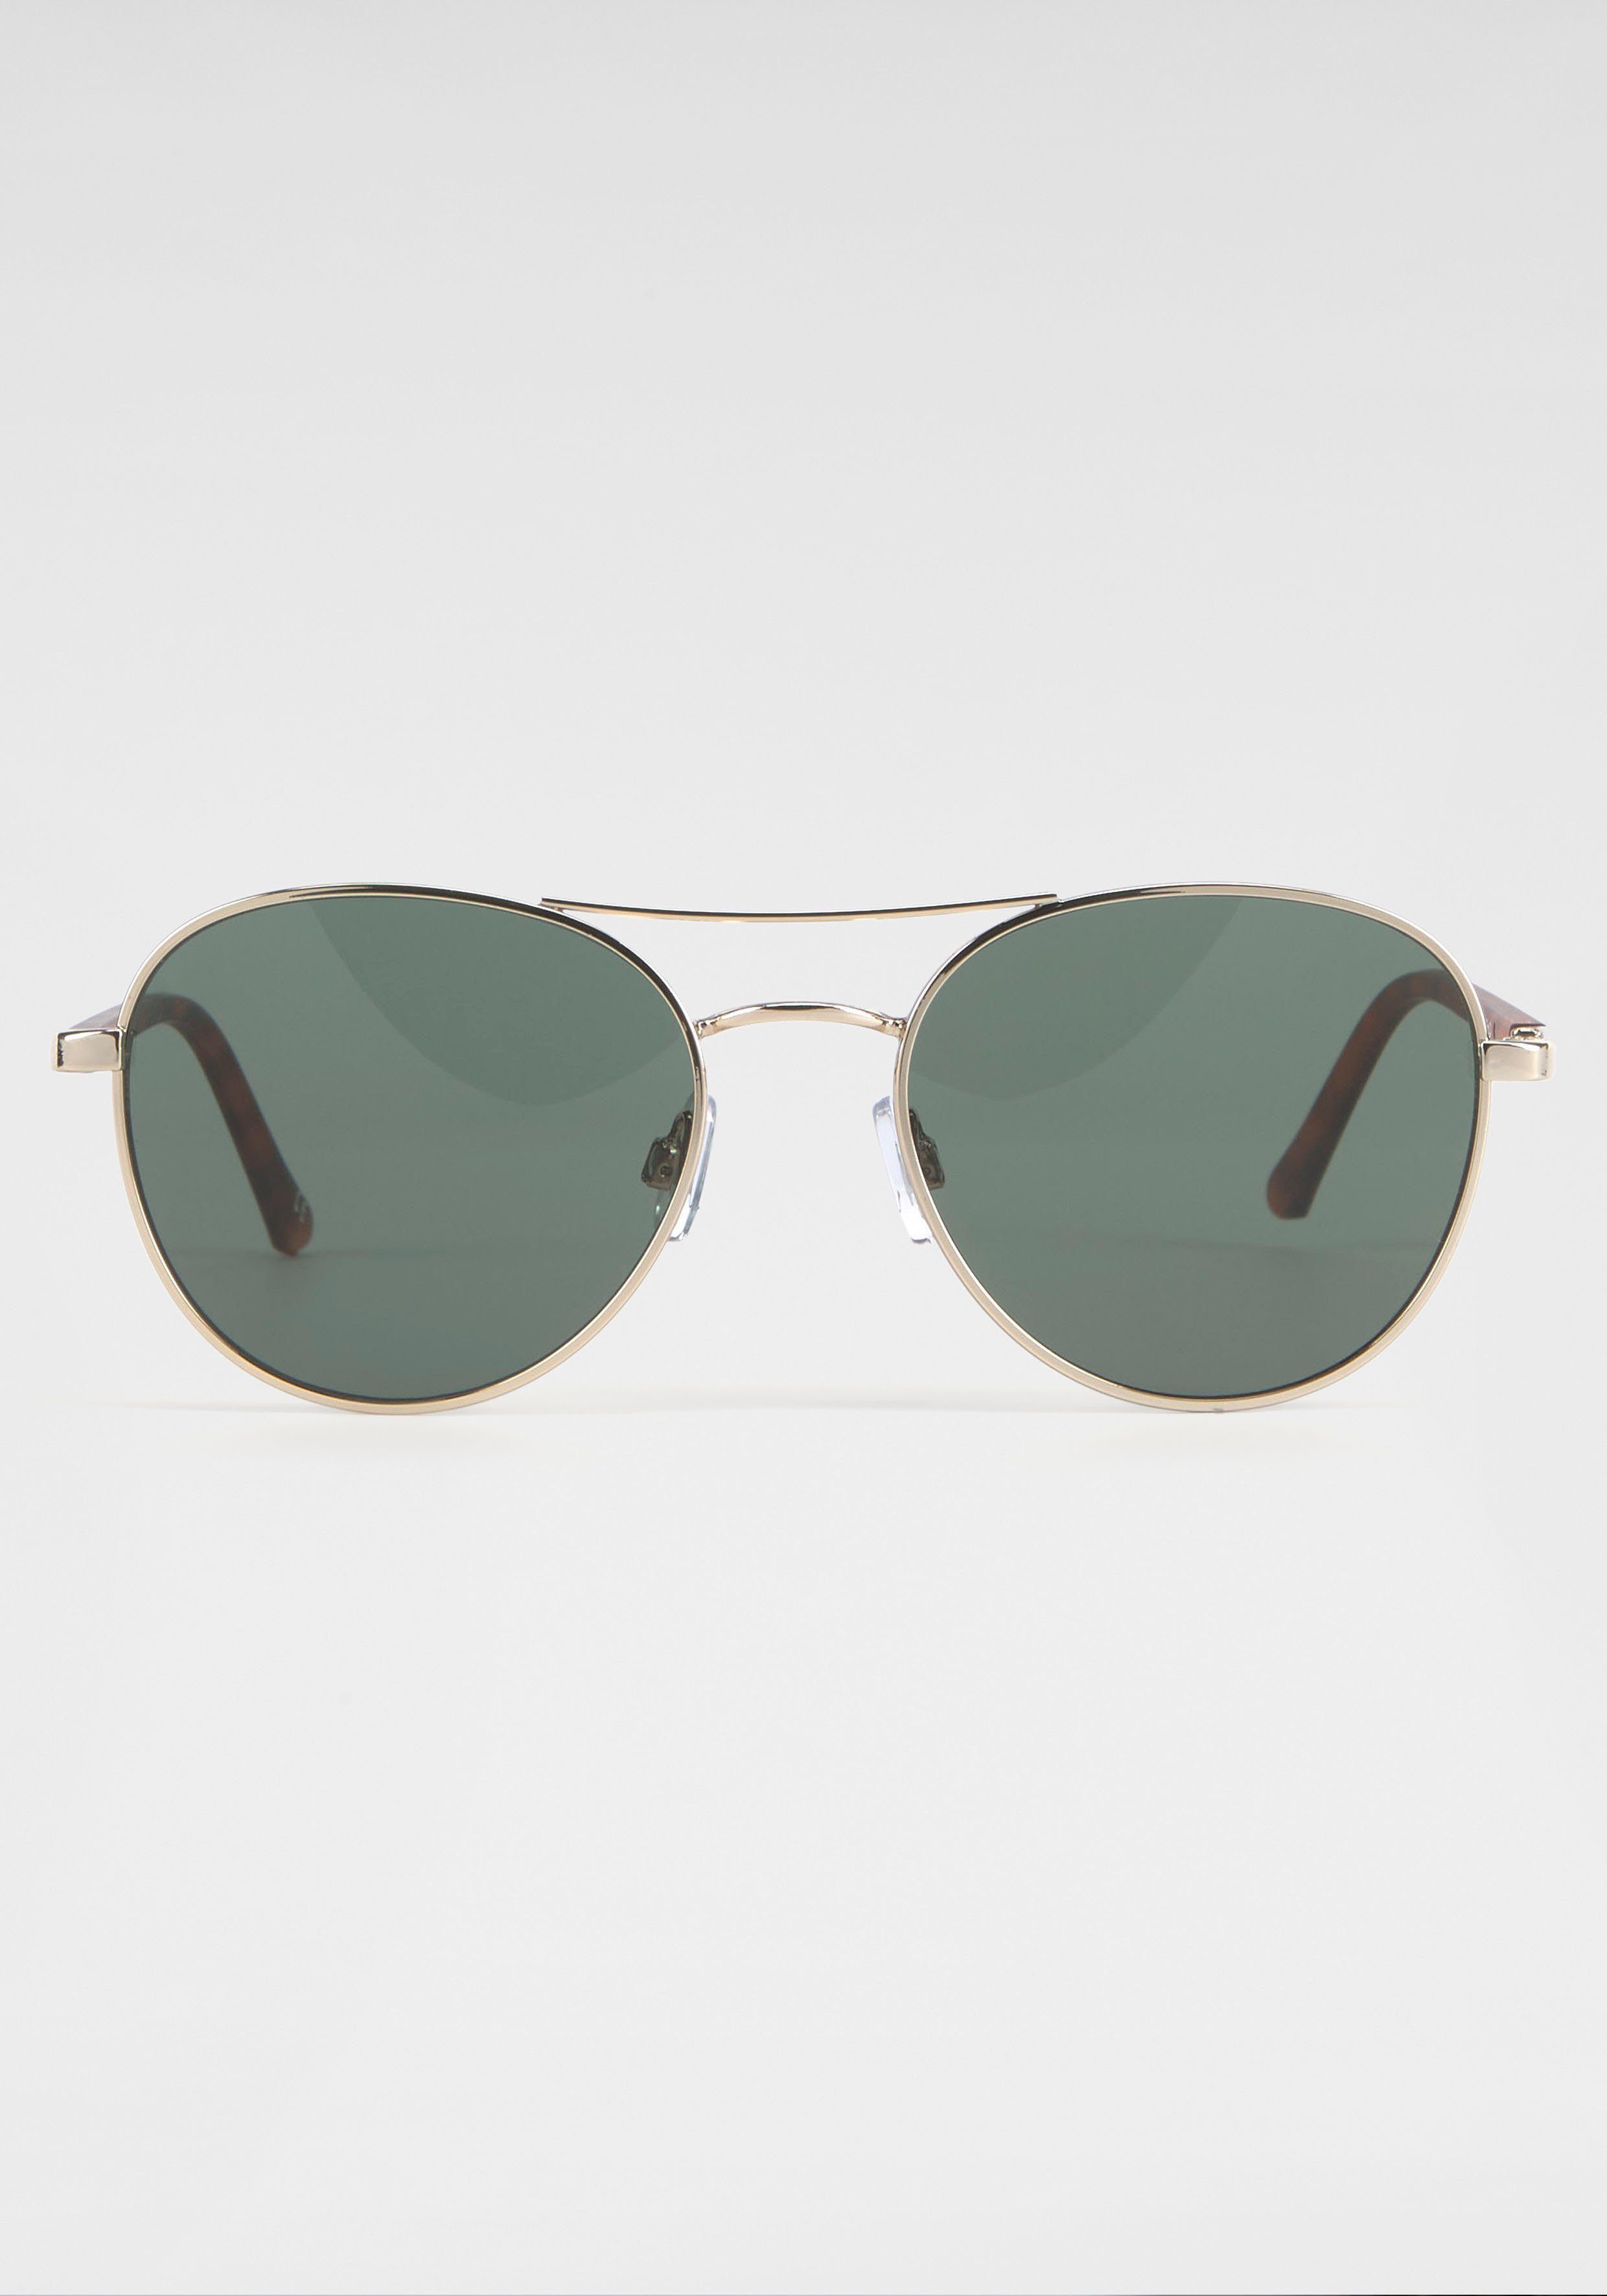 Gin Tonic Pilotenbrille Getönte Gläser, Bügel im Animal-Design goldfarben-grün | Sonnenbrillen